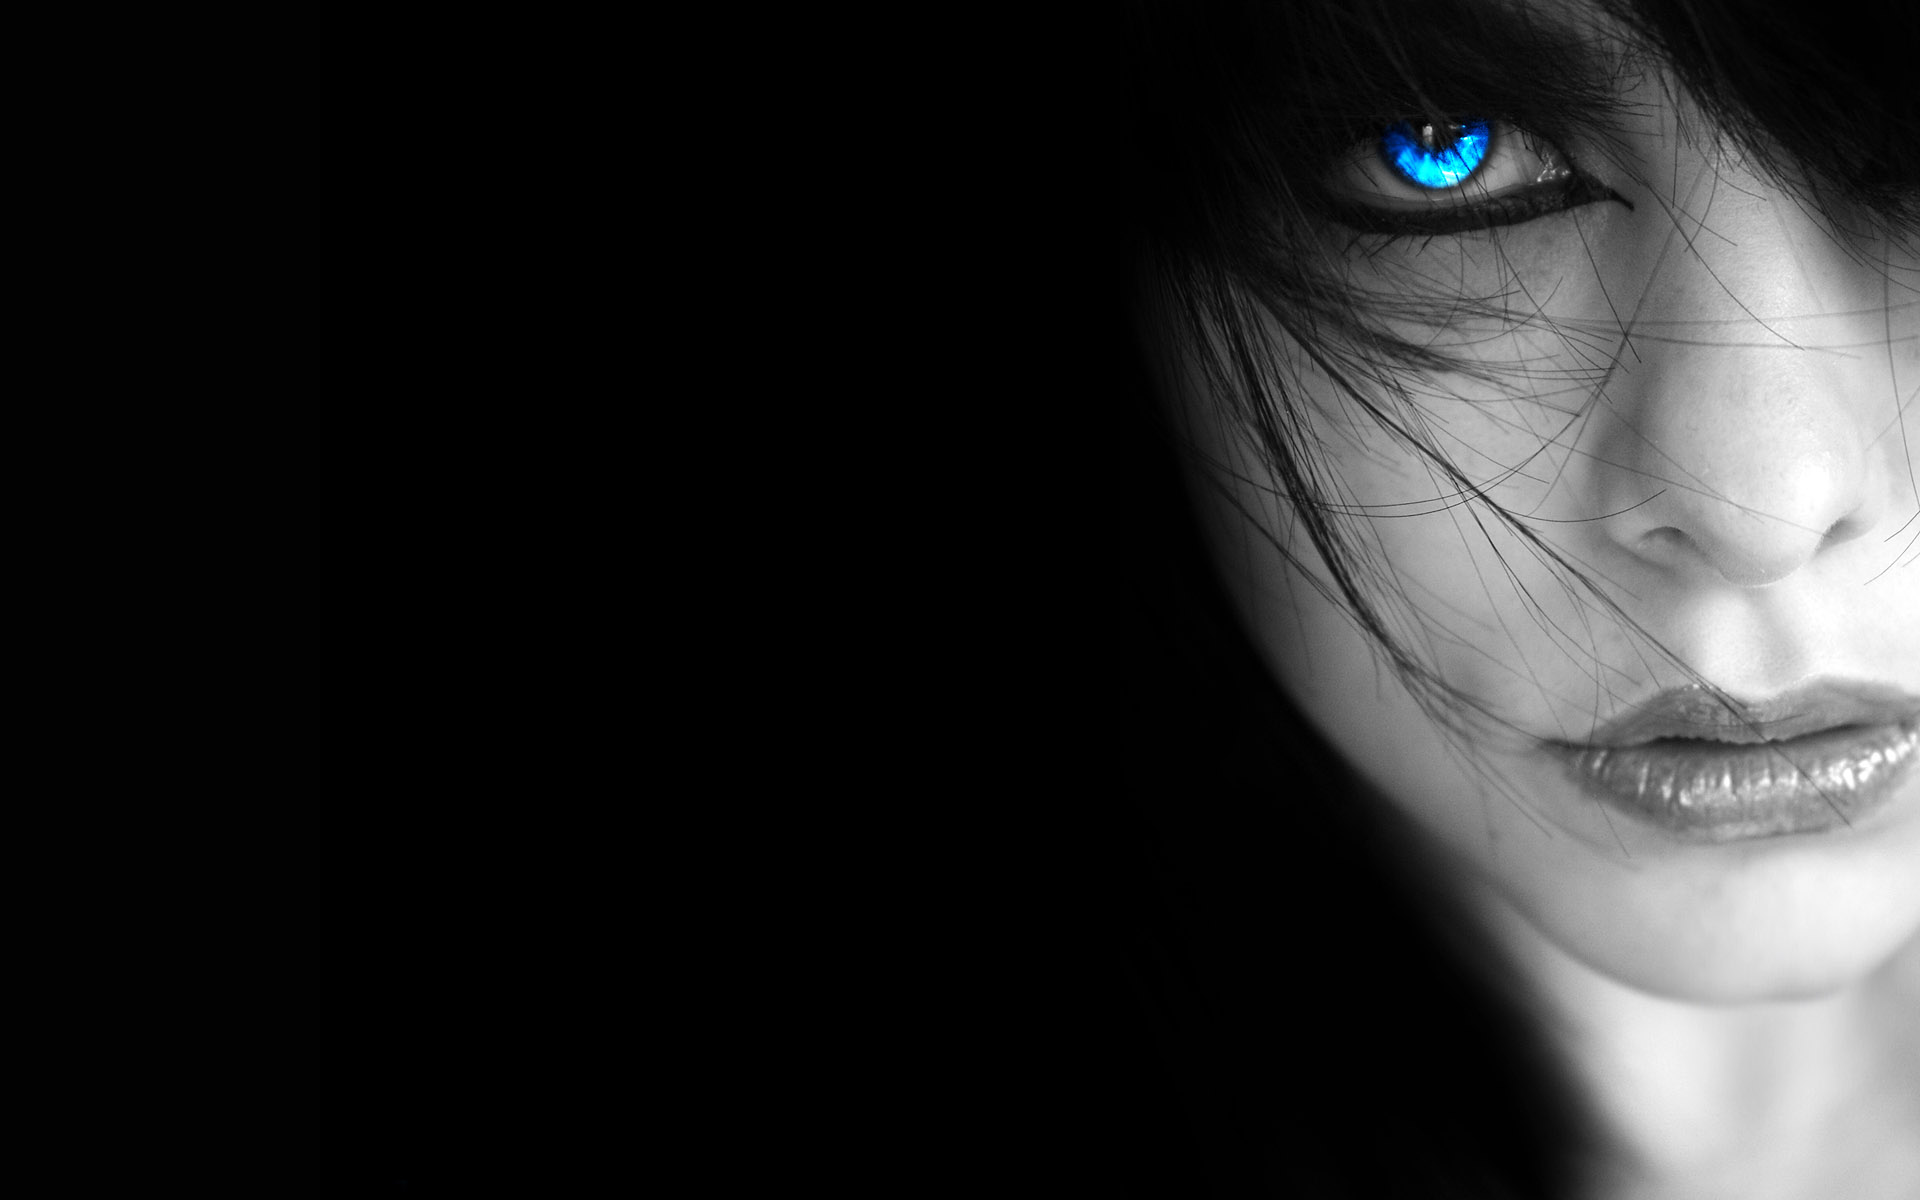 dark, gothic, mysterious, women, blue eyes